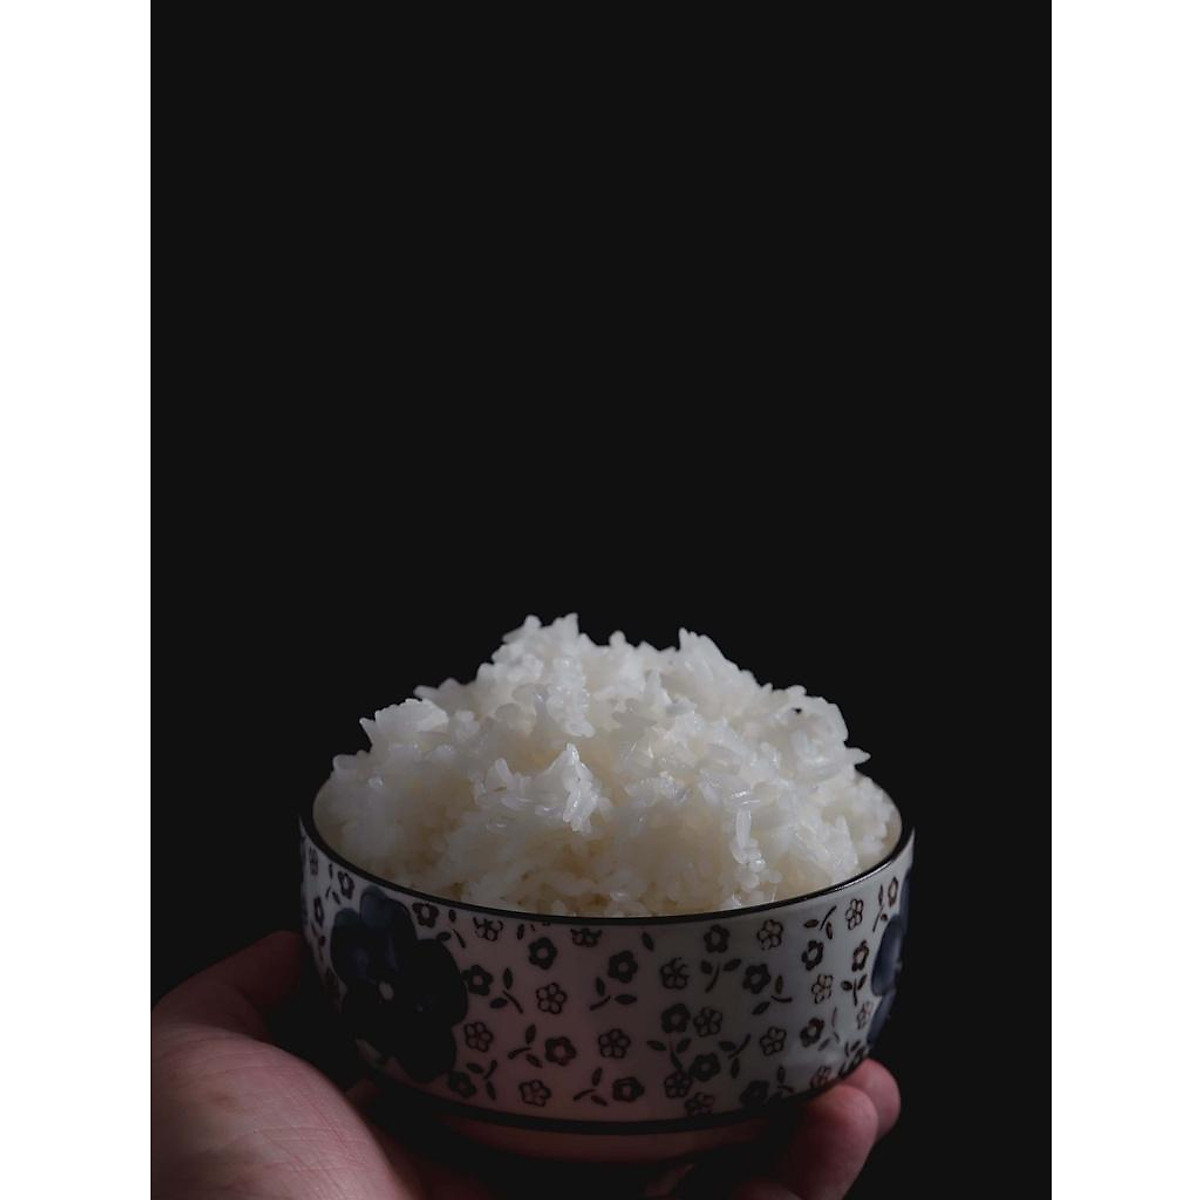 Gạo Thơm Lài Túi 5Kg - Cơm dẻo, thơm mềm - Gạo, nếp, đậu